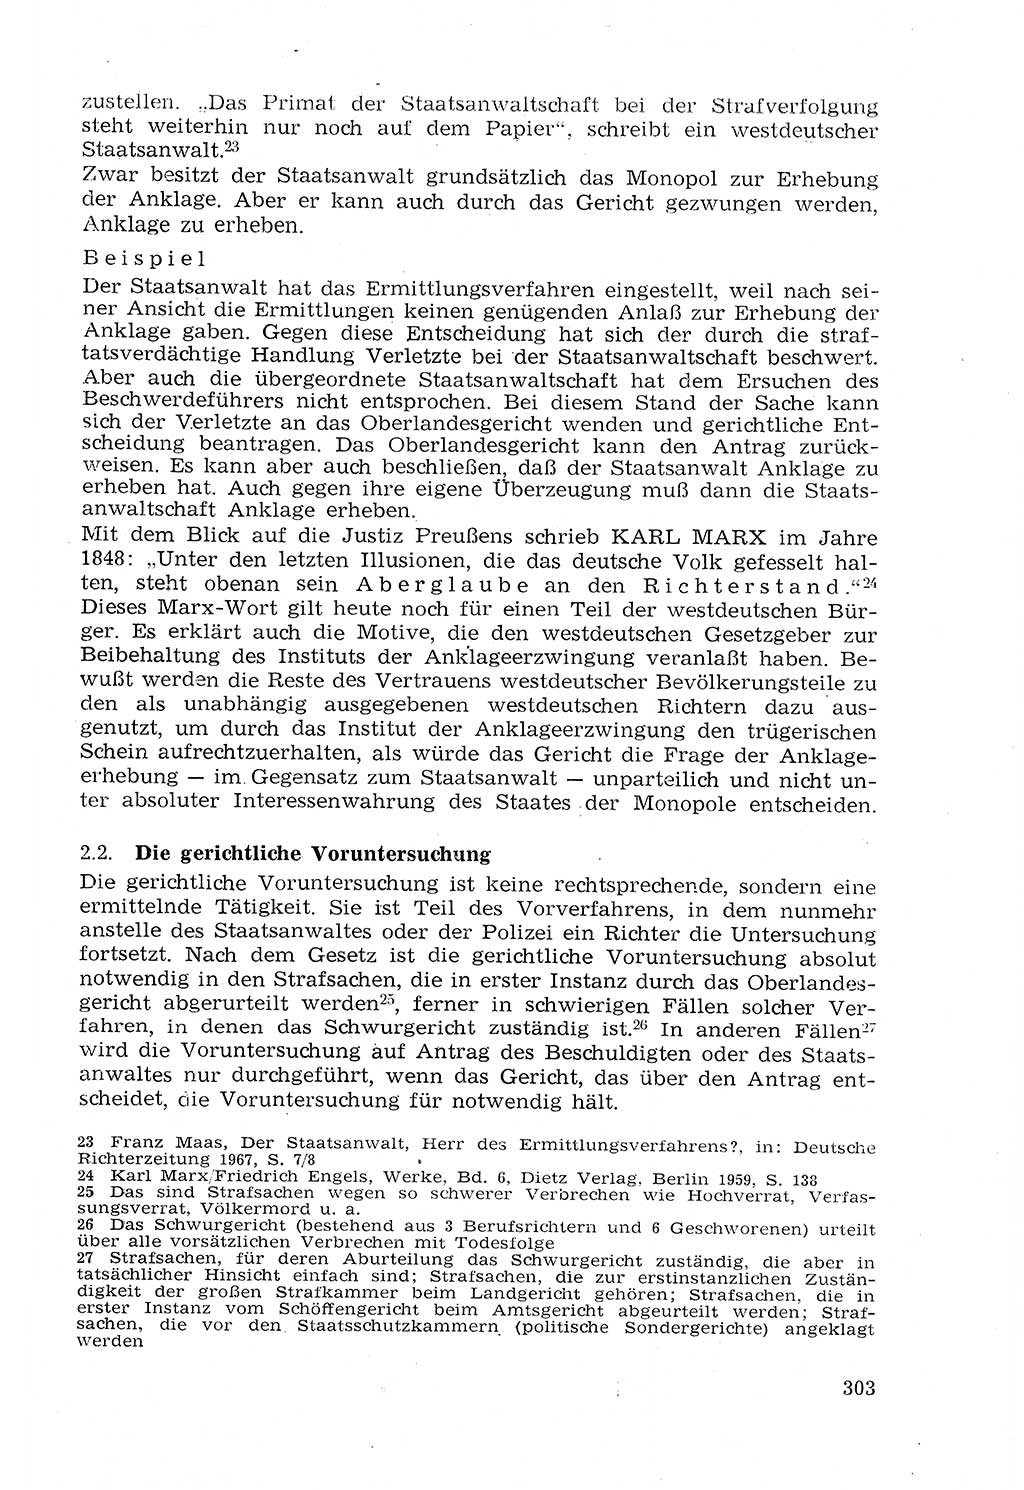 Strafprozeßrecht der DDR (Deutsche Demokratische Republik), Lehrmaterial 1969, Seite 303 (Strafprozeßr. DDR Lehrmat. 1969, S. 303)